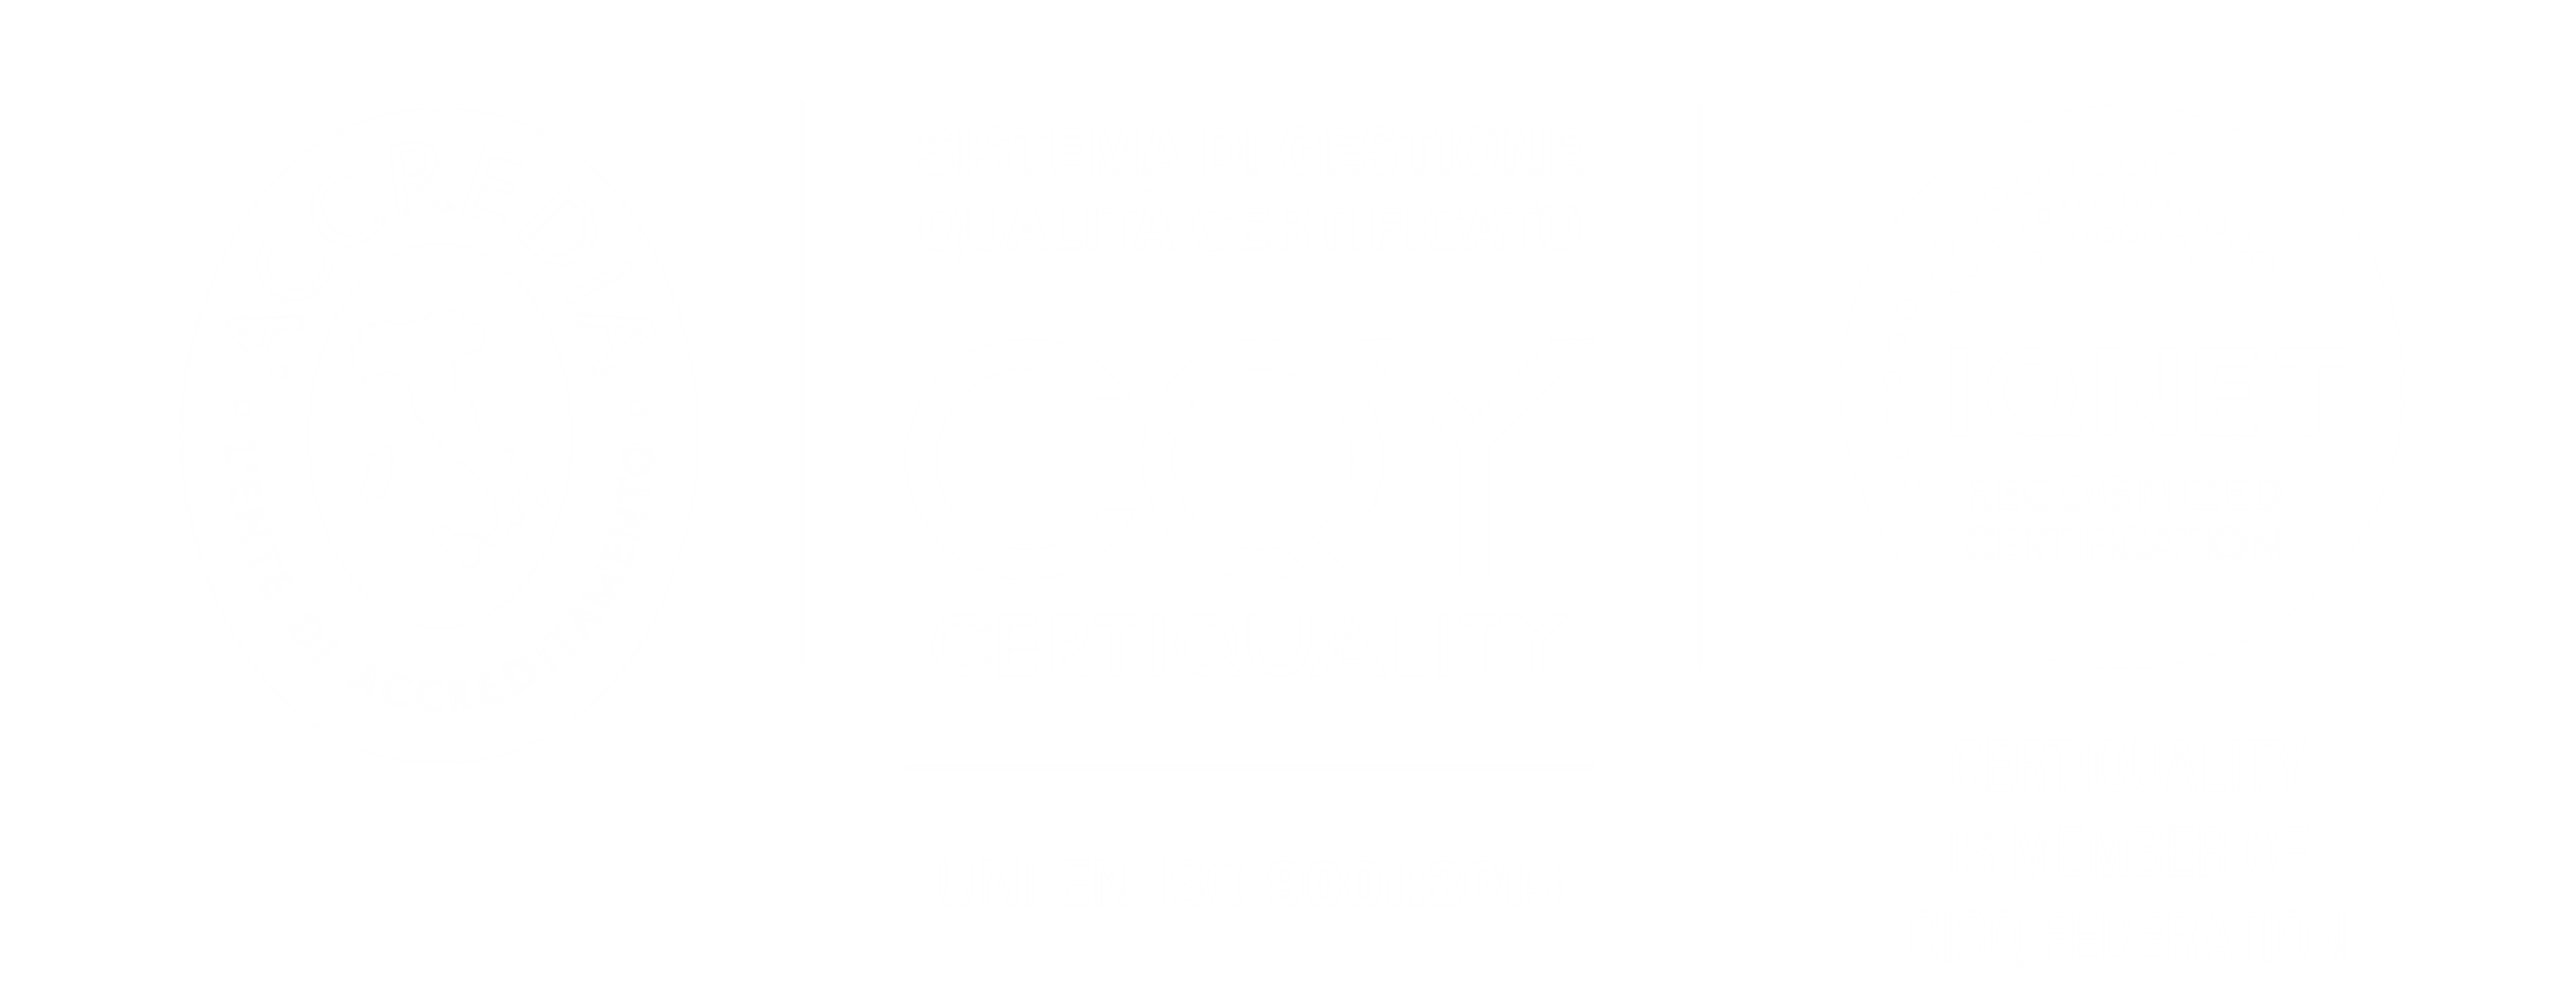 certificazione-9001-ekeria-white-1